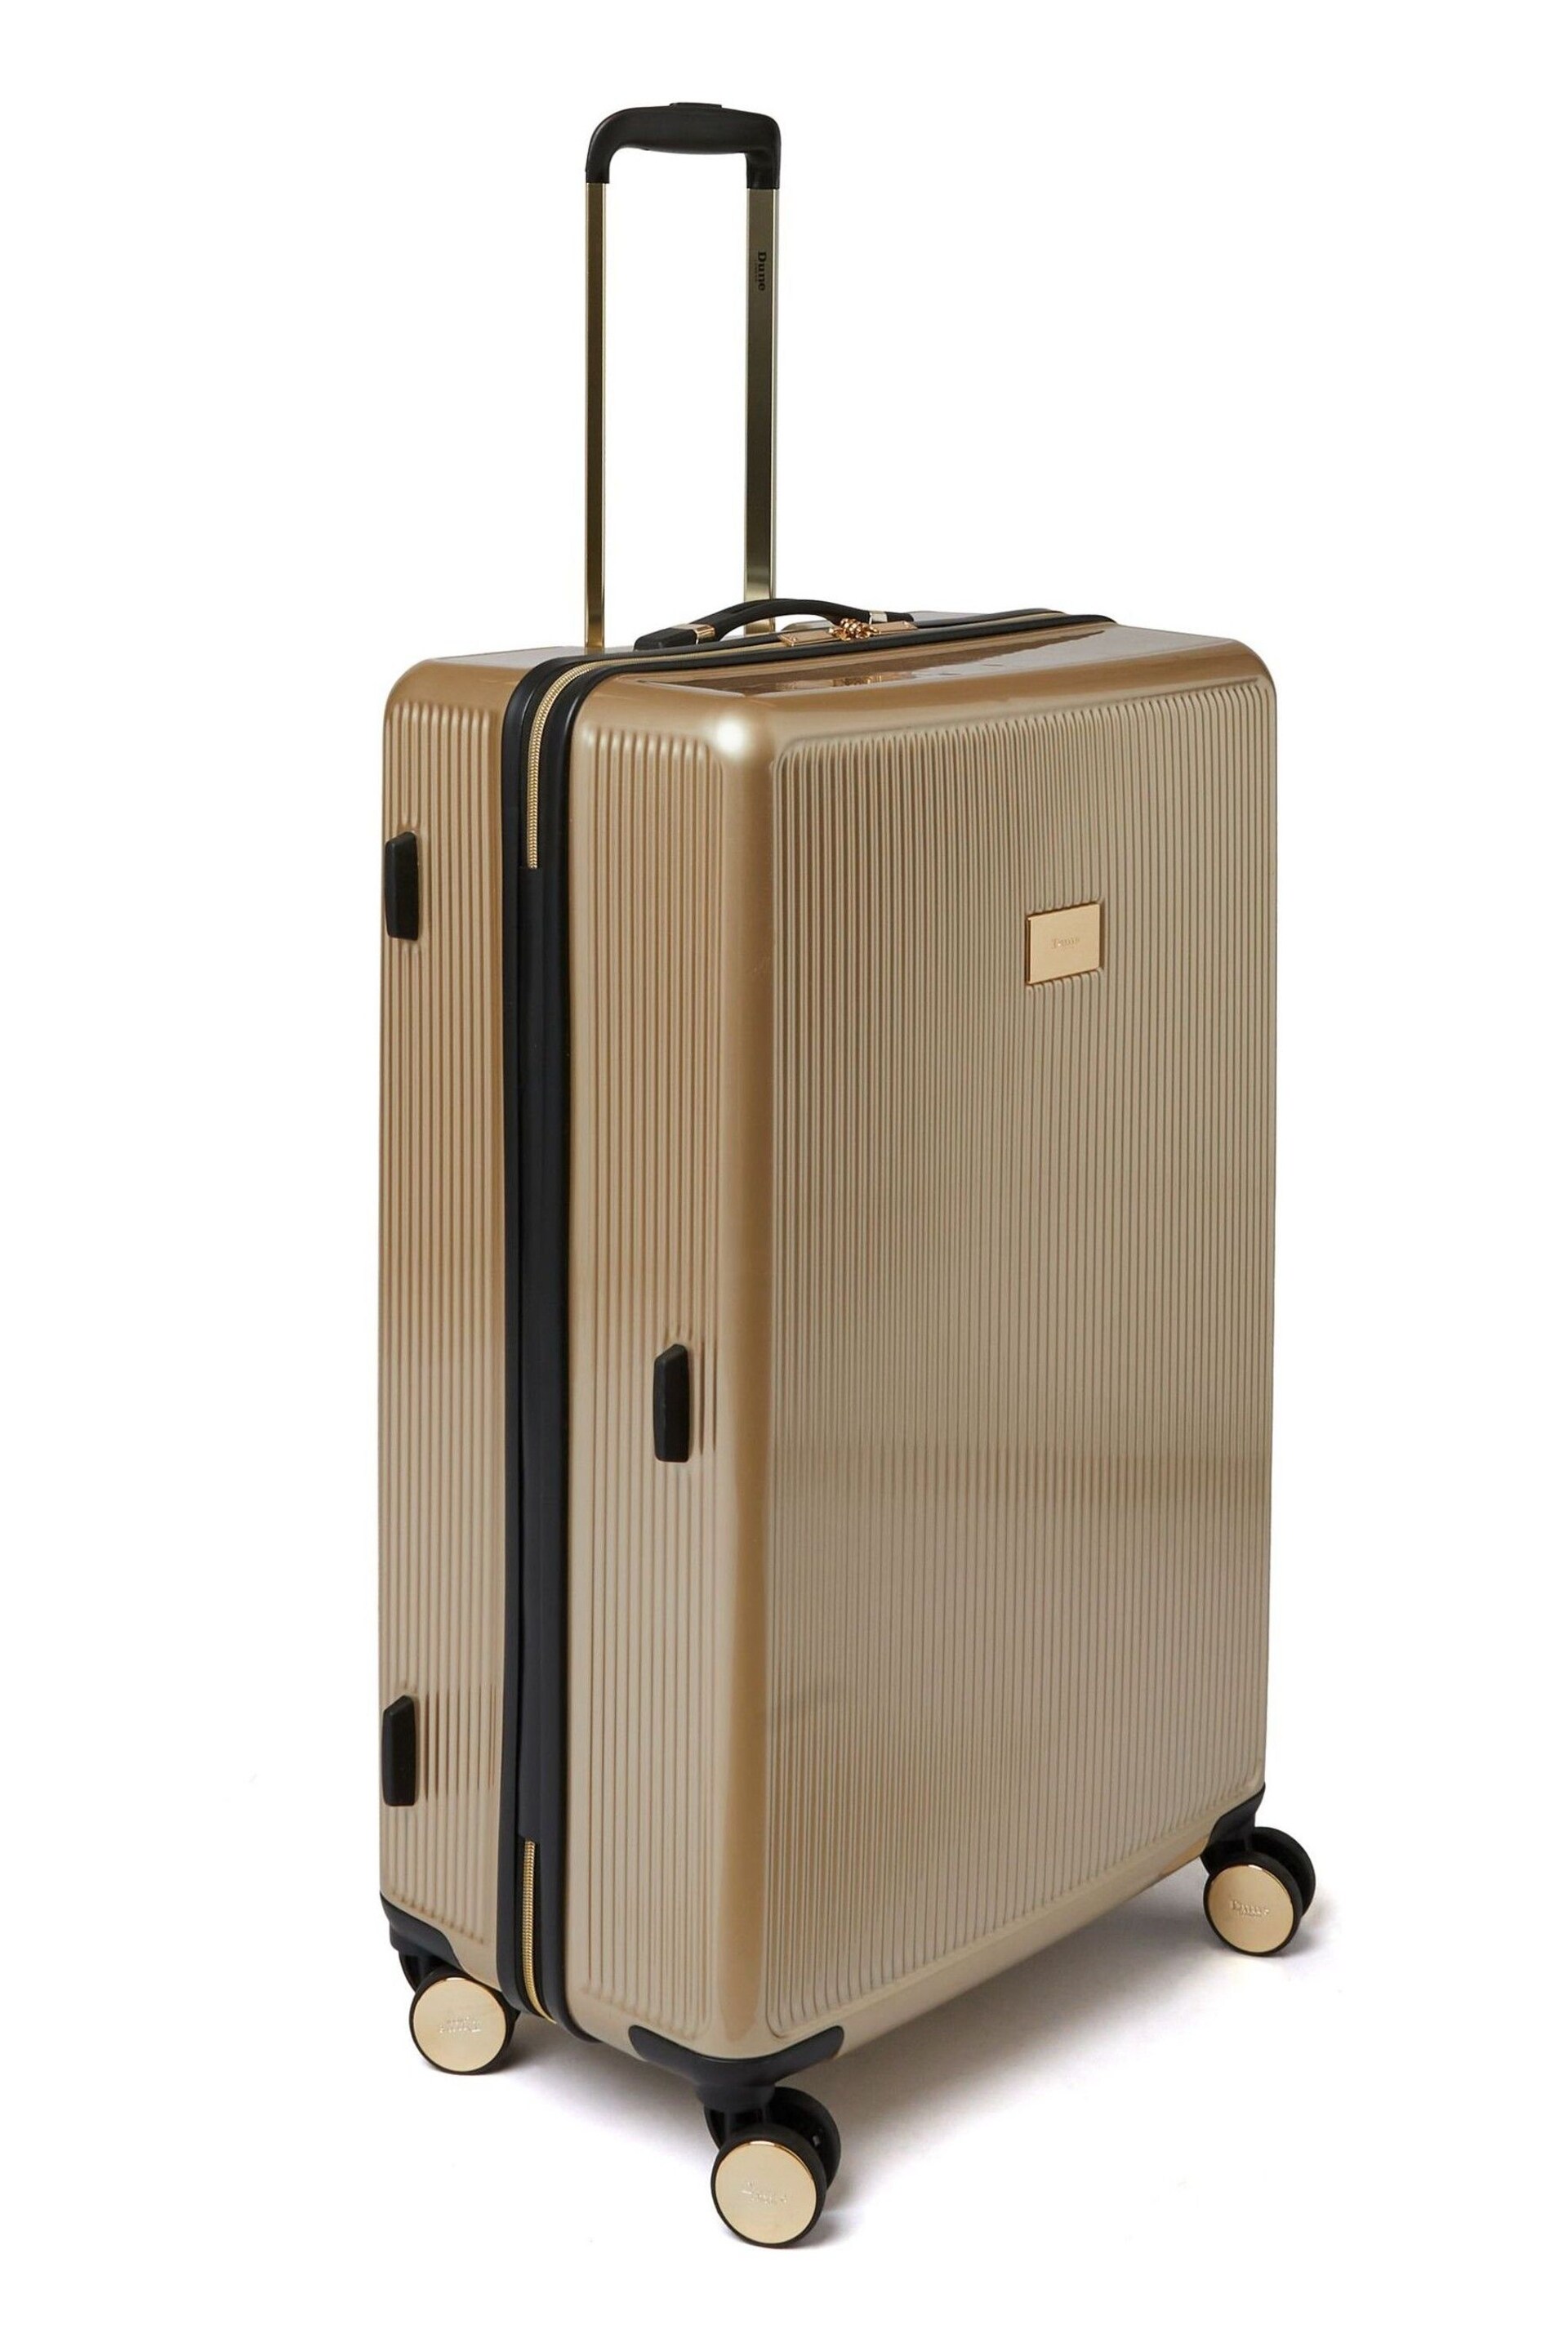 Dune London Gold Olive Large Suitcase - Image 3 of 5